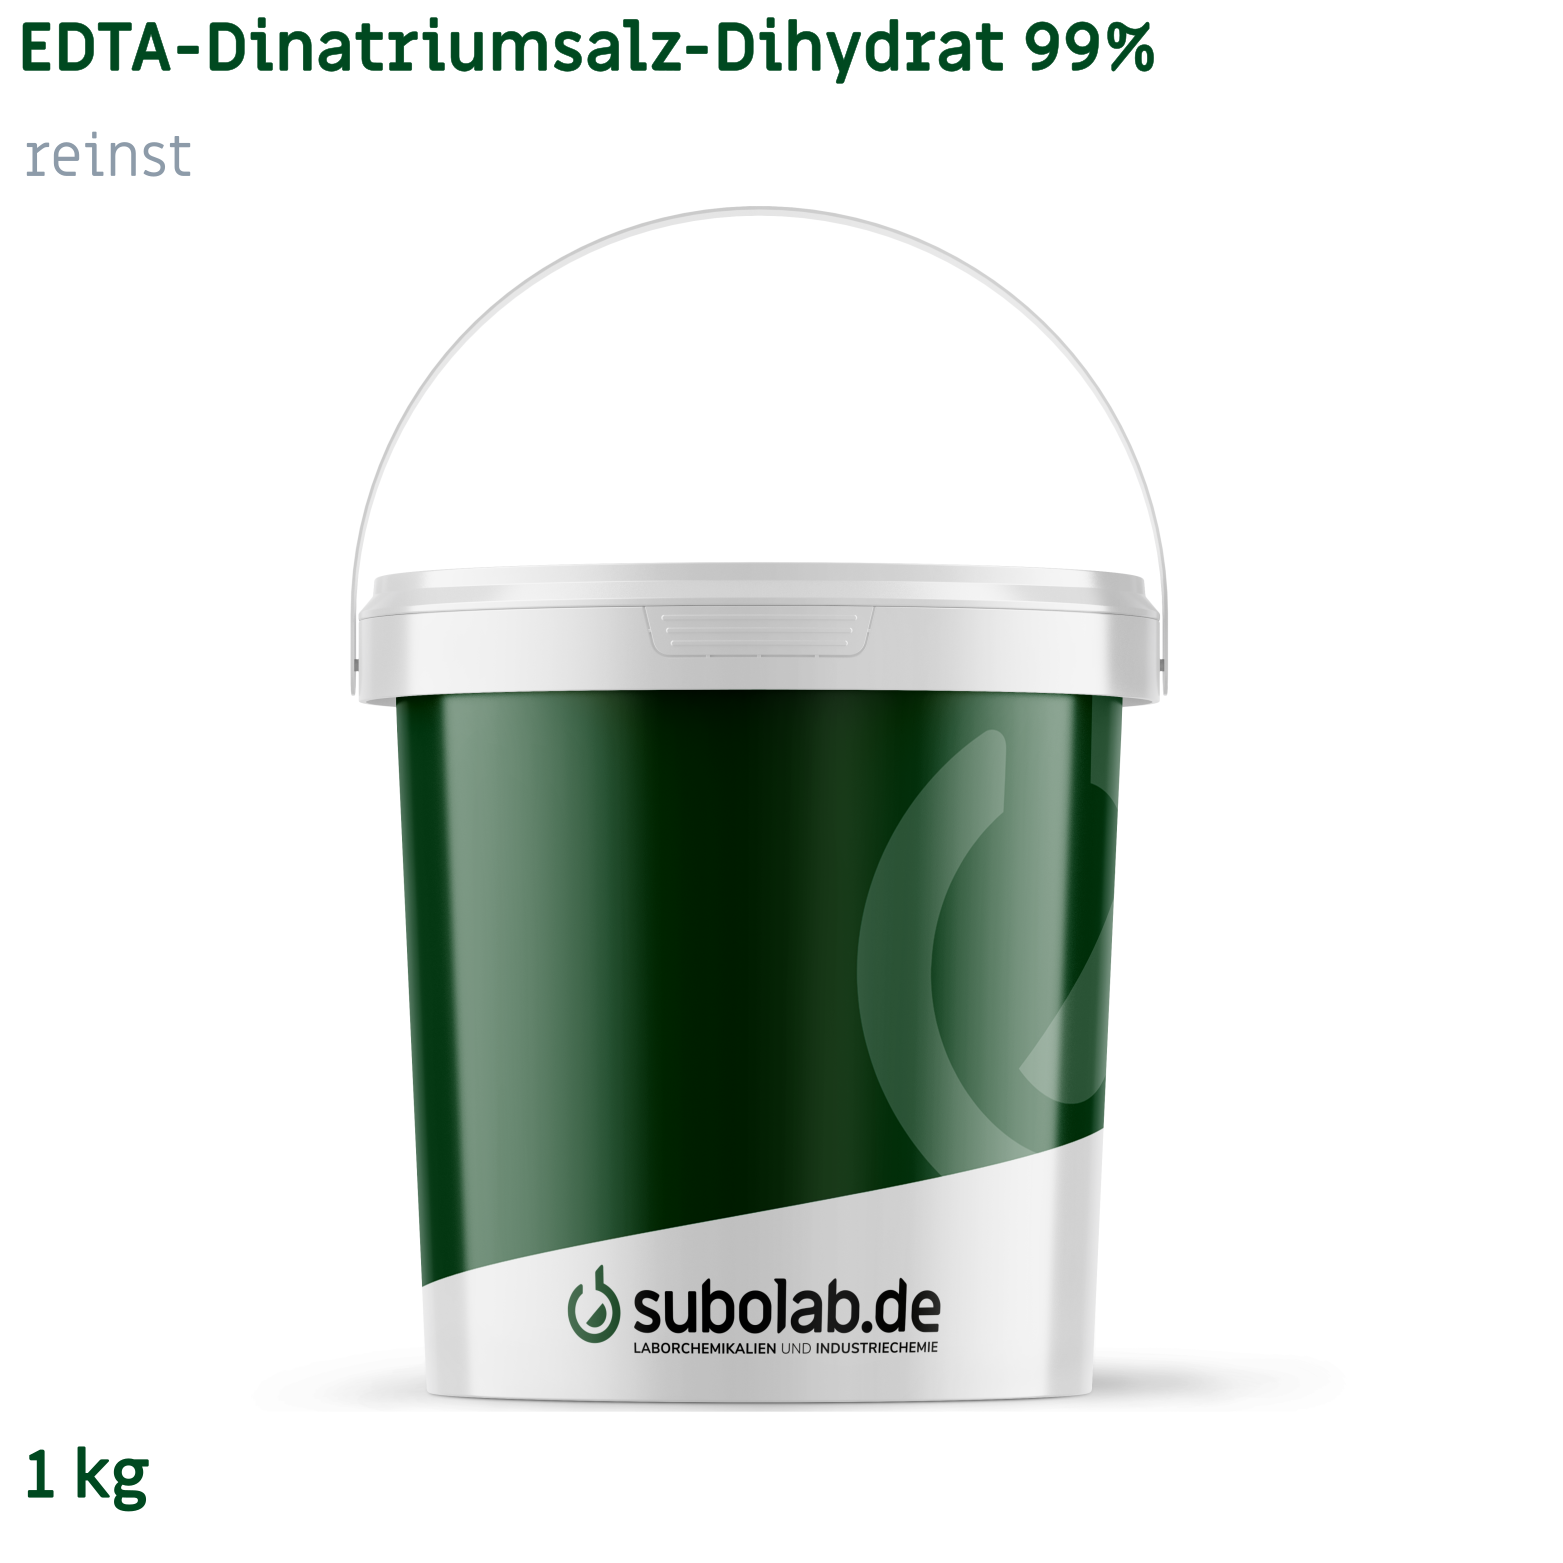 Bild von EDTA - Dinatriumsalz - Dihydrat 99% reinst (1 kg)